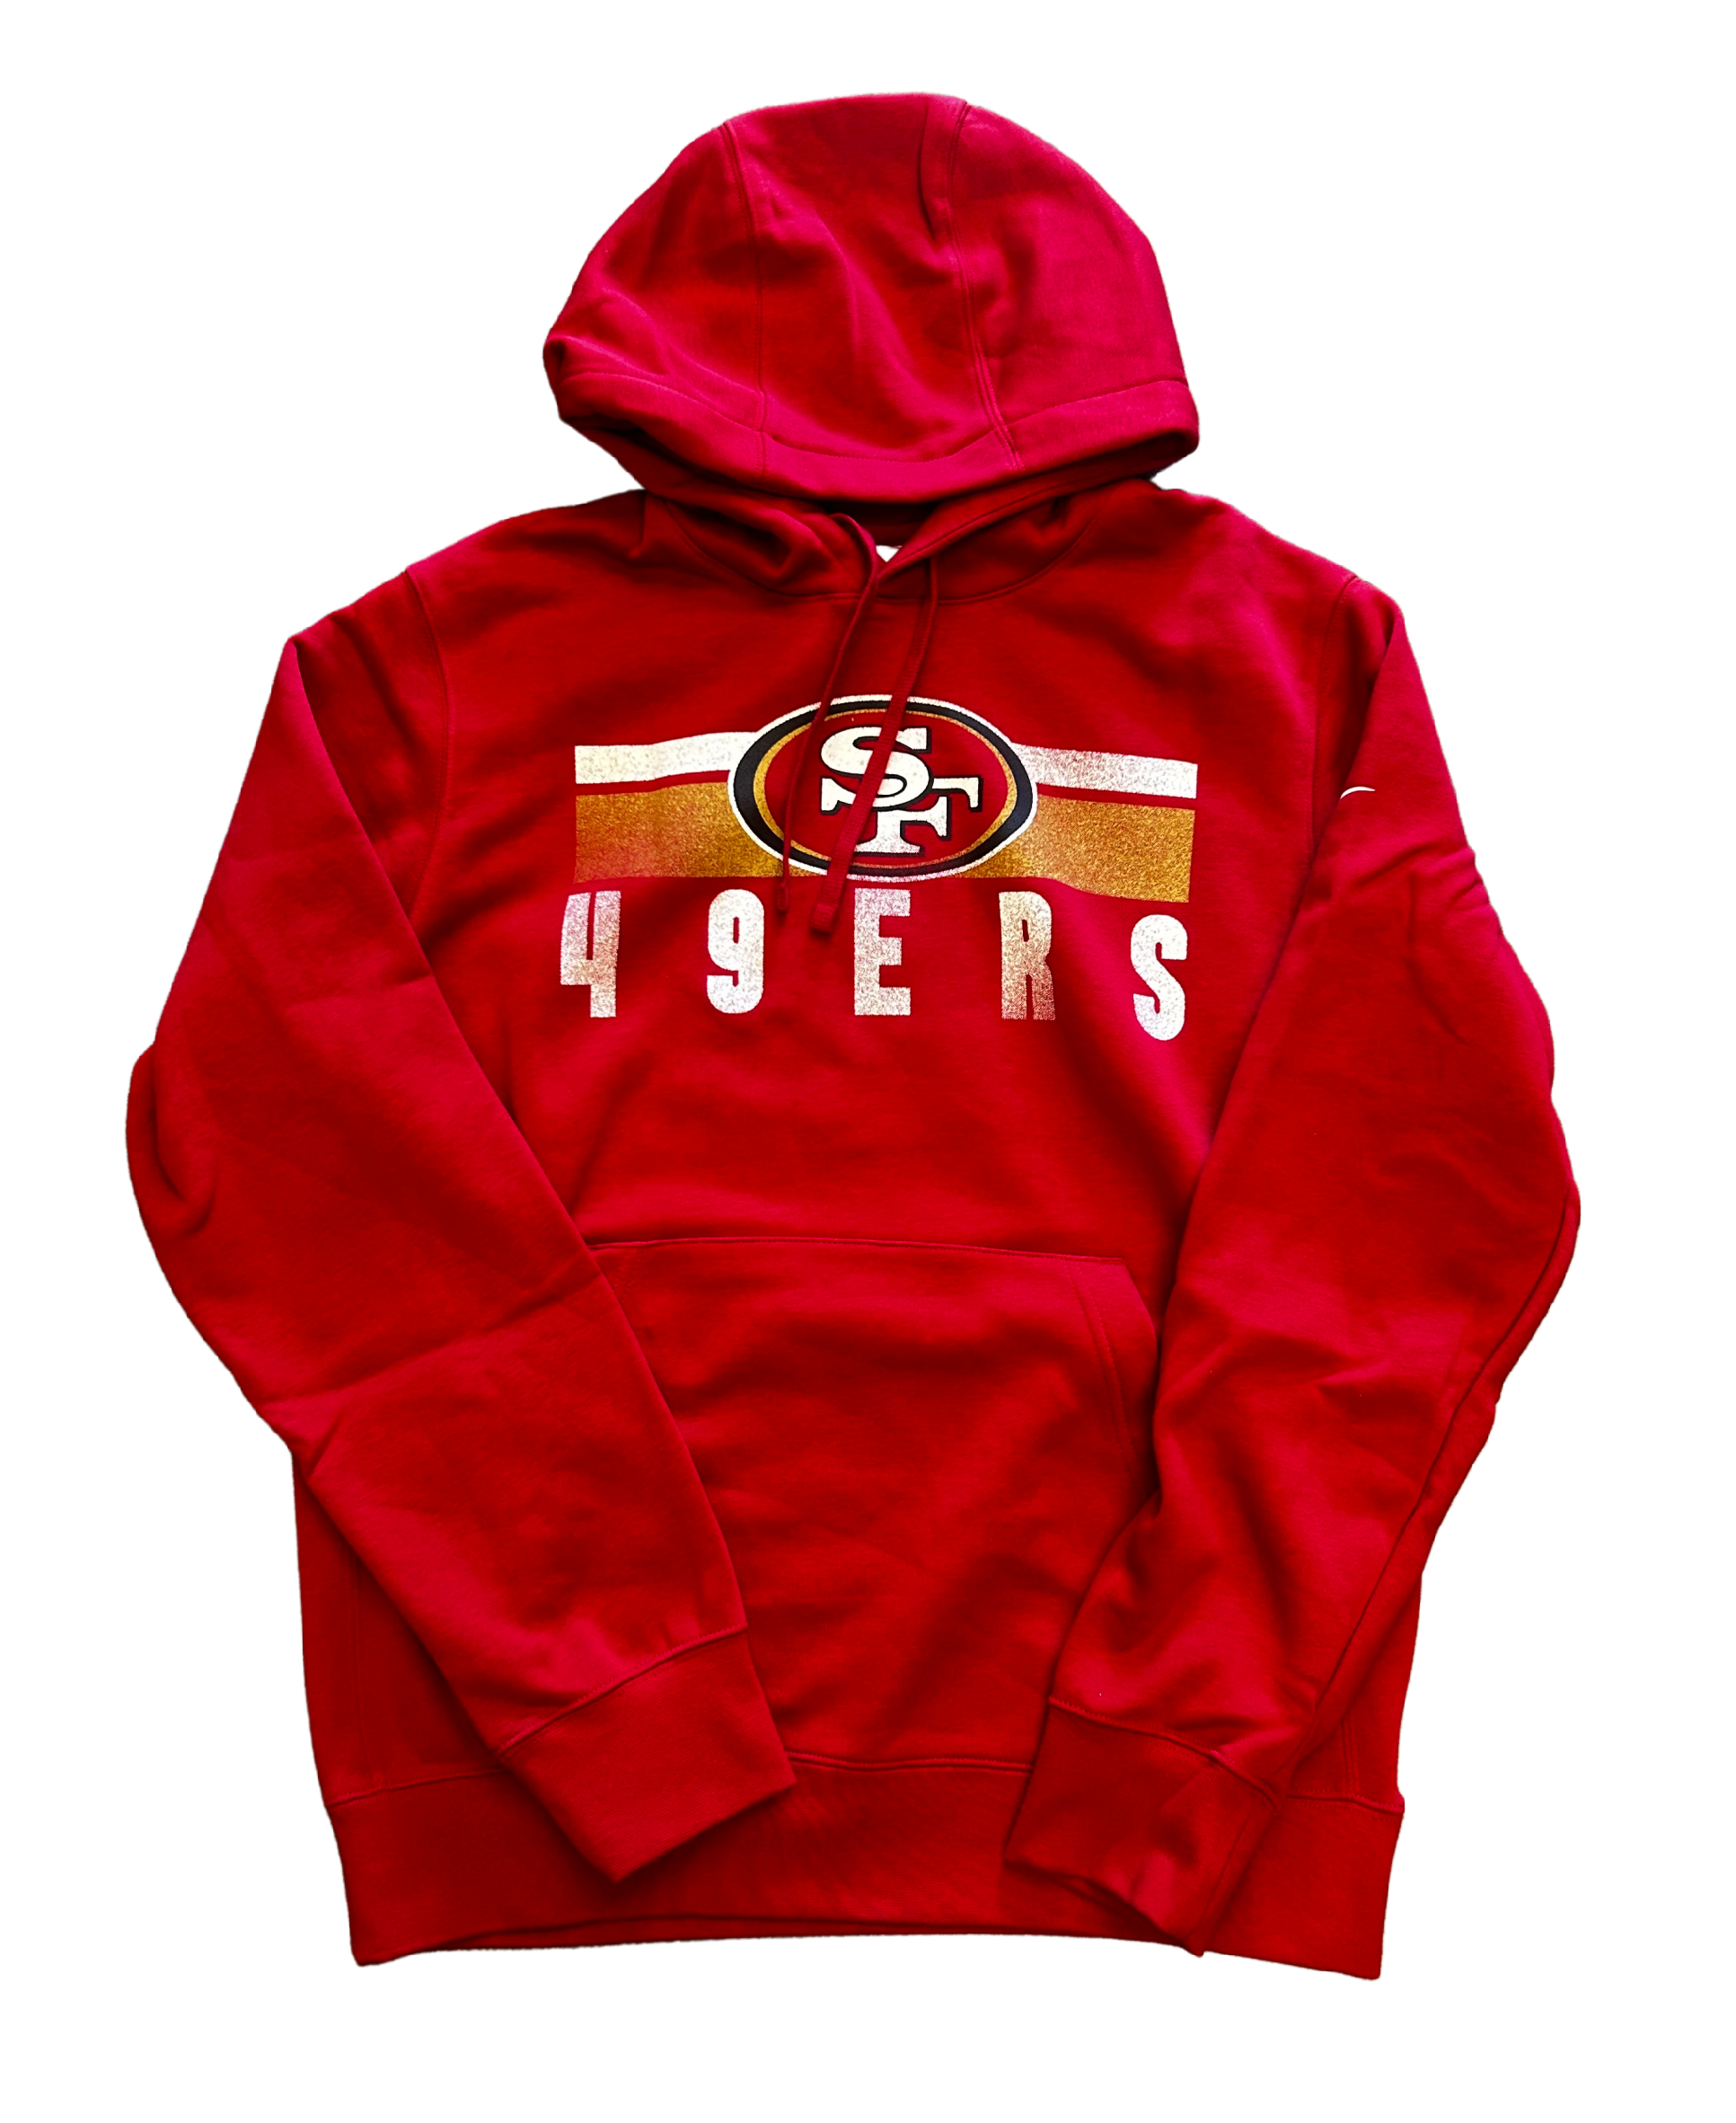 Nike Men's San Francisco 49ERS Hoodie - Red